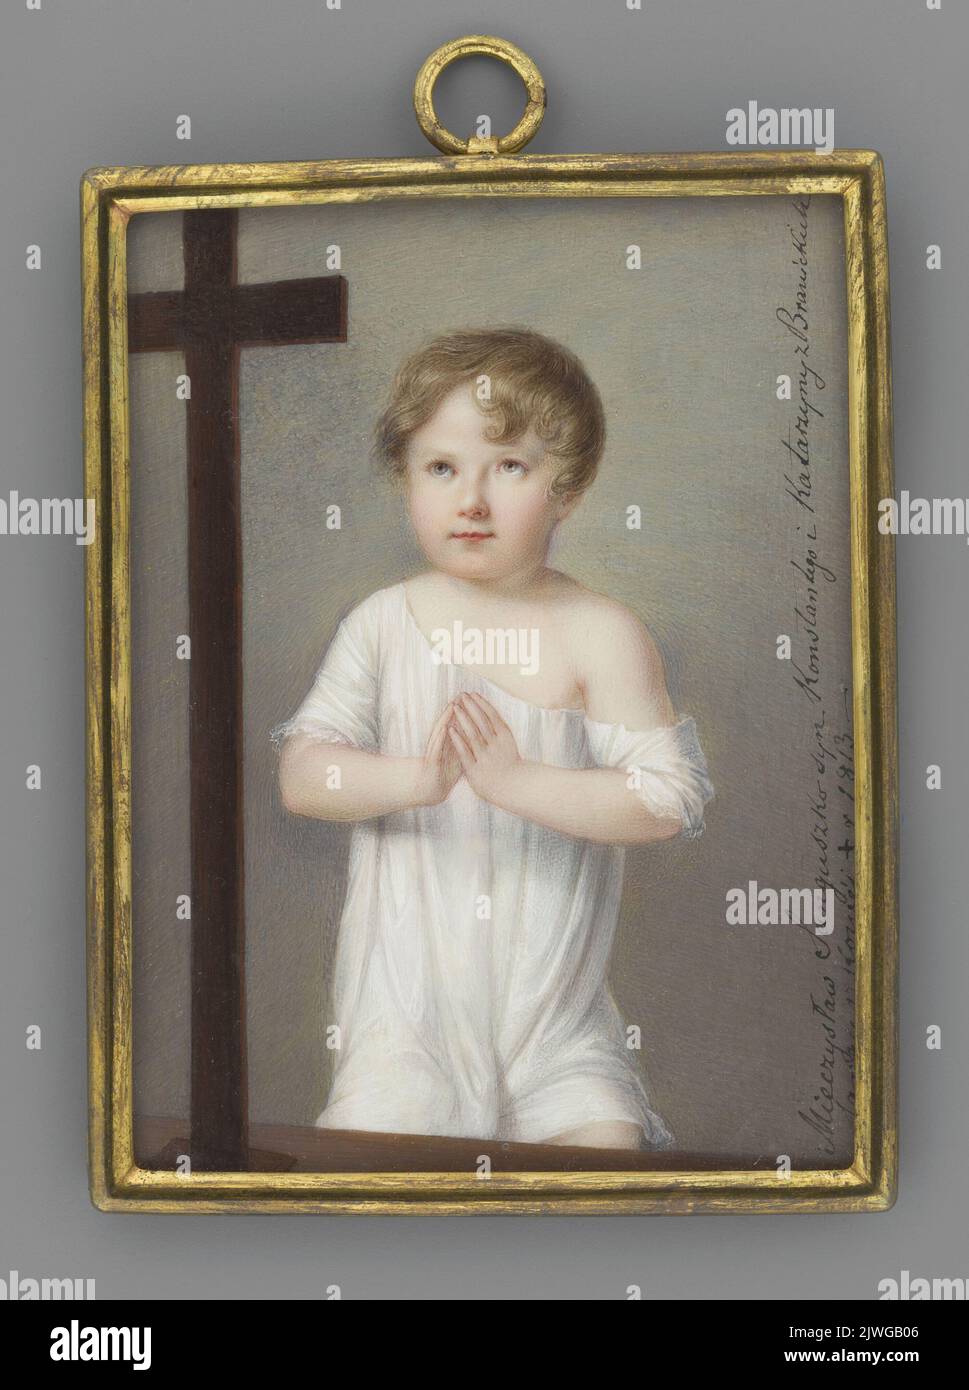 Mieczysław Sanguszko-Kowelski (1807-1813) jako dziecko modlące się przed krucyfiksem. Richter, Anton (1783-1850), pittore, sconosciuto, pittore Foto Stock